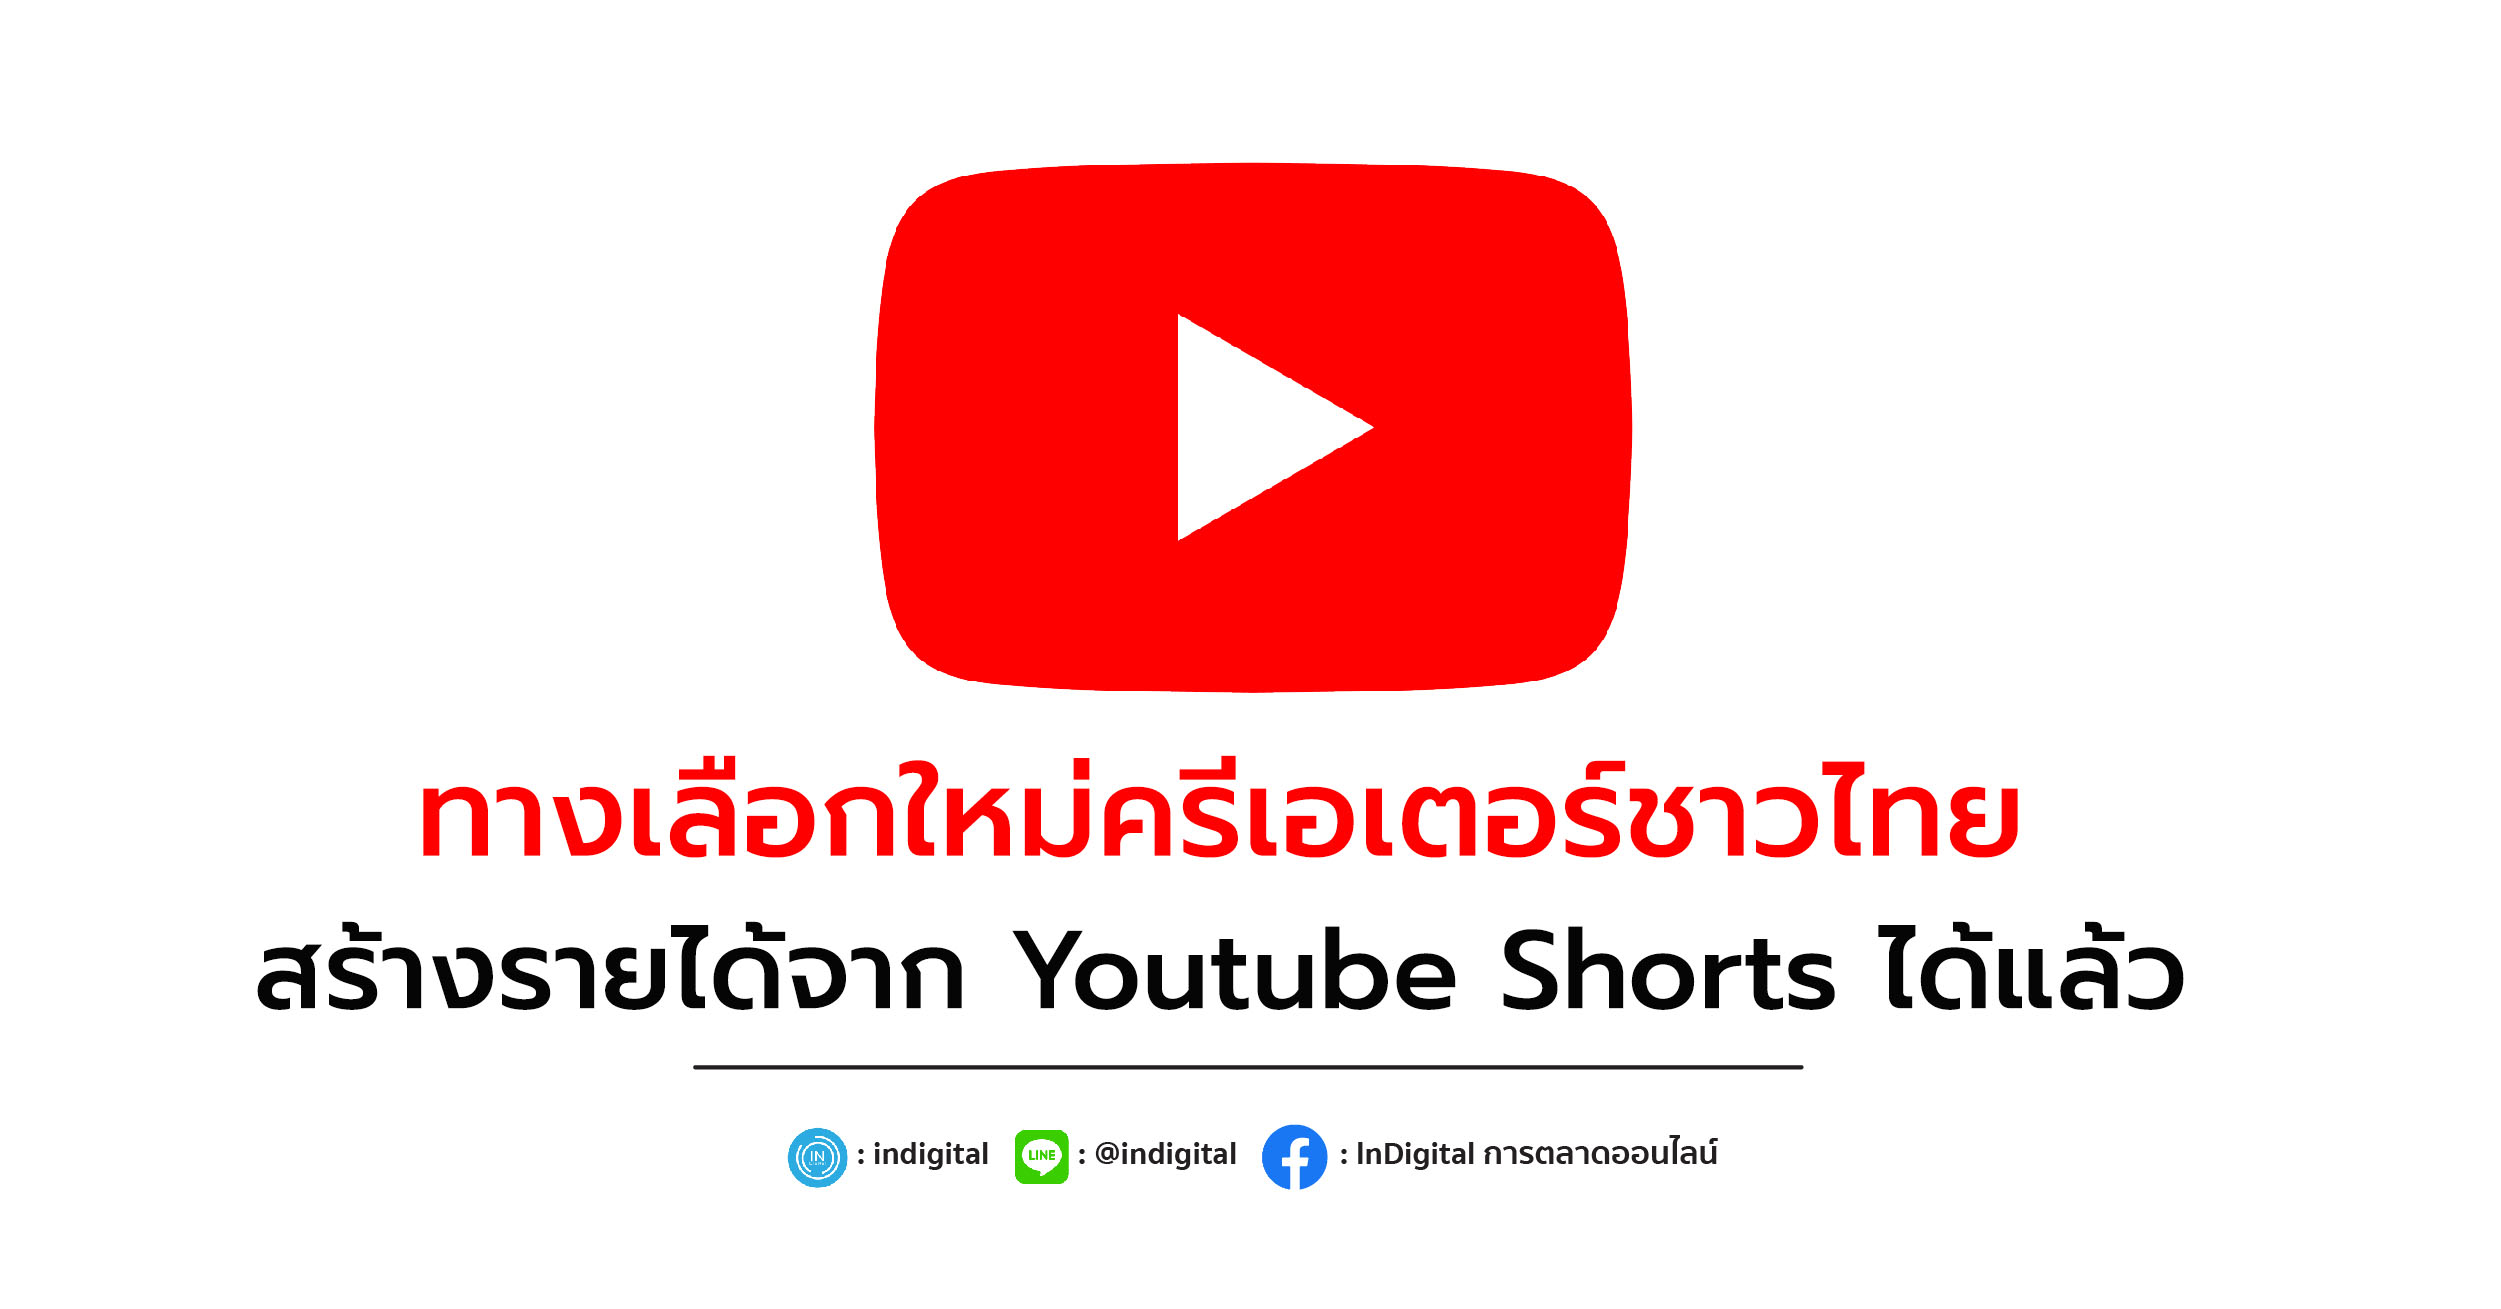 ทางเลือกใหม่ครีเอเตอร์ชาวไทย สร้างรายได้จาก Youtube Shorts ได้แล้ว